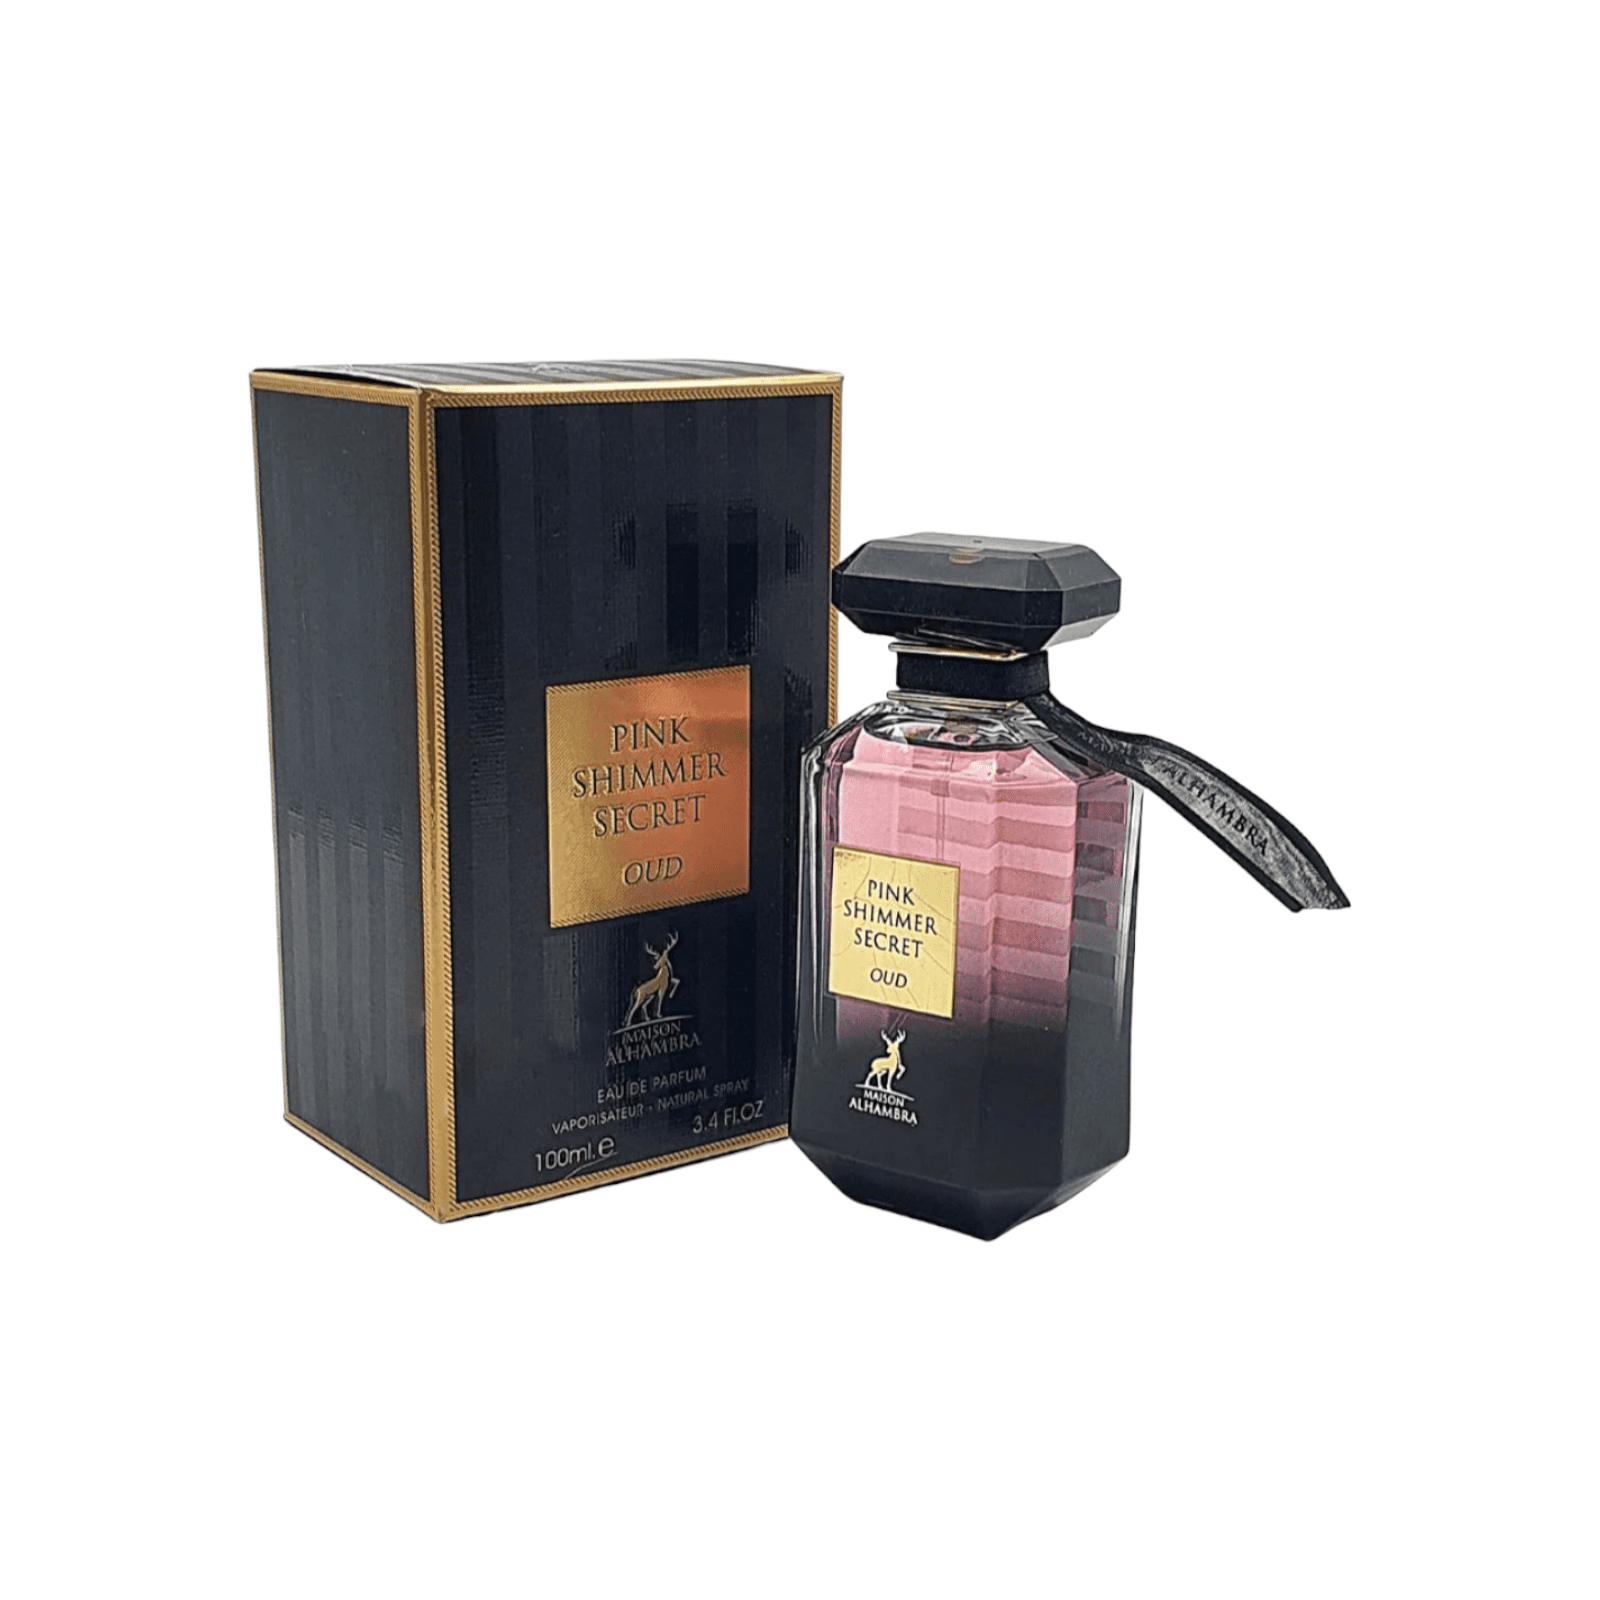 Pink Shimmer Secret Oud Eau De Parfum Maison Alhambra 100ml 3.4 Fl Oz –  Triple Traders